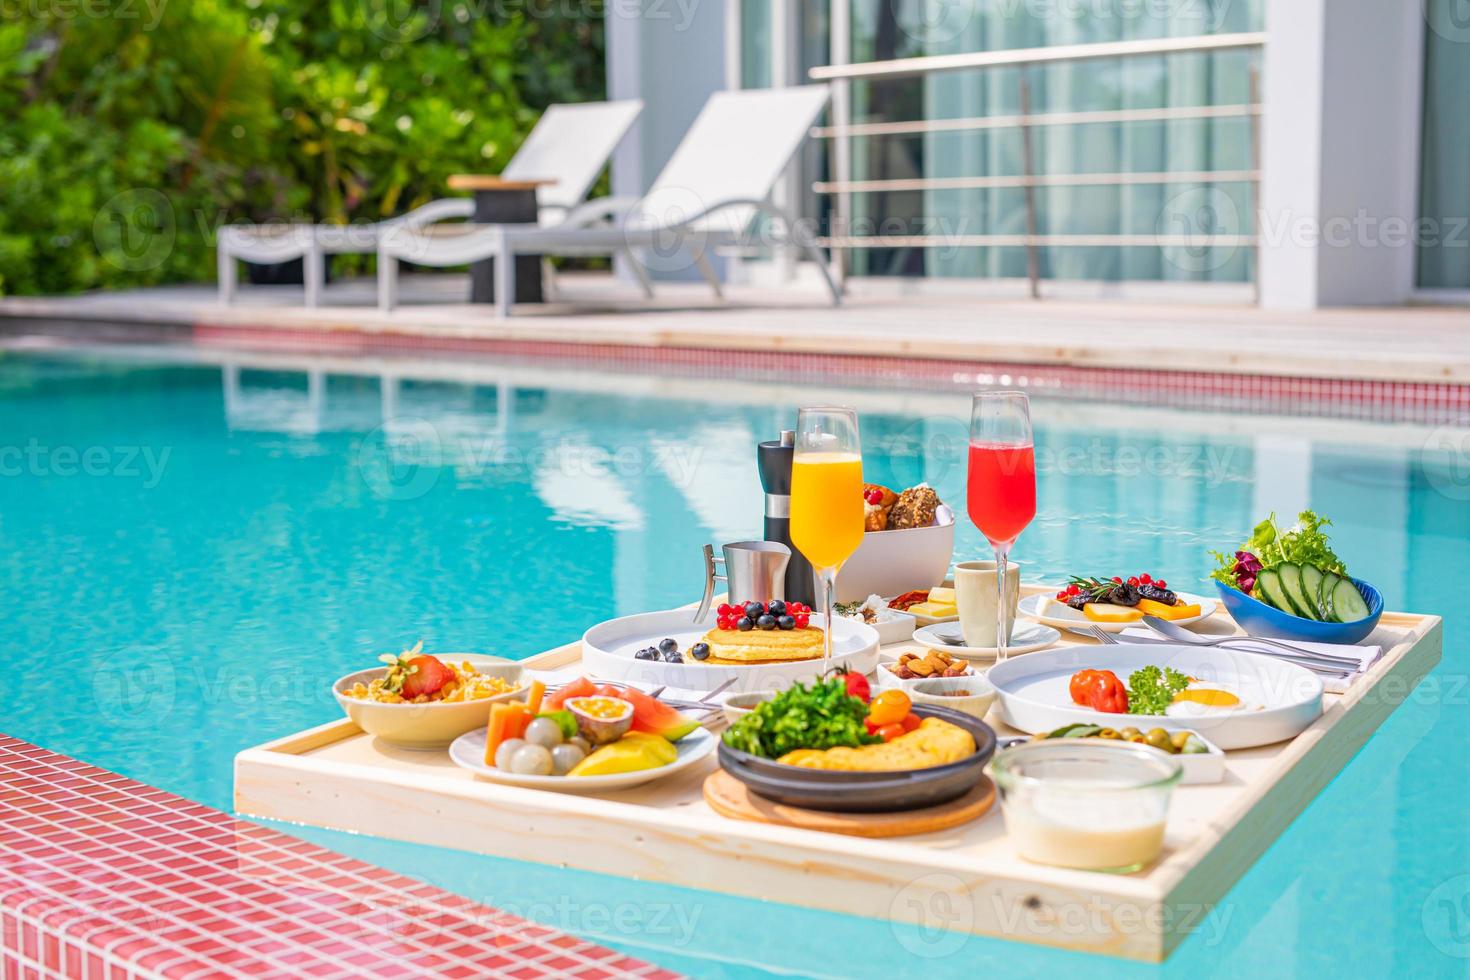 desayuno en piscina, desayuno flotante en lujoso resort tropical. mesa relajante en el agua tranquila de la piscina, desayuno saludable plato de frutas hotel resort piscina. pareja tropical playa estilo de vida de lujo foto